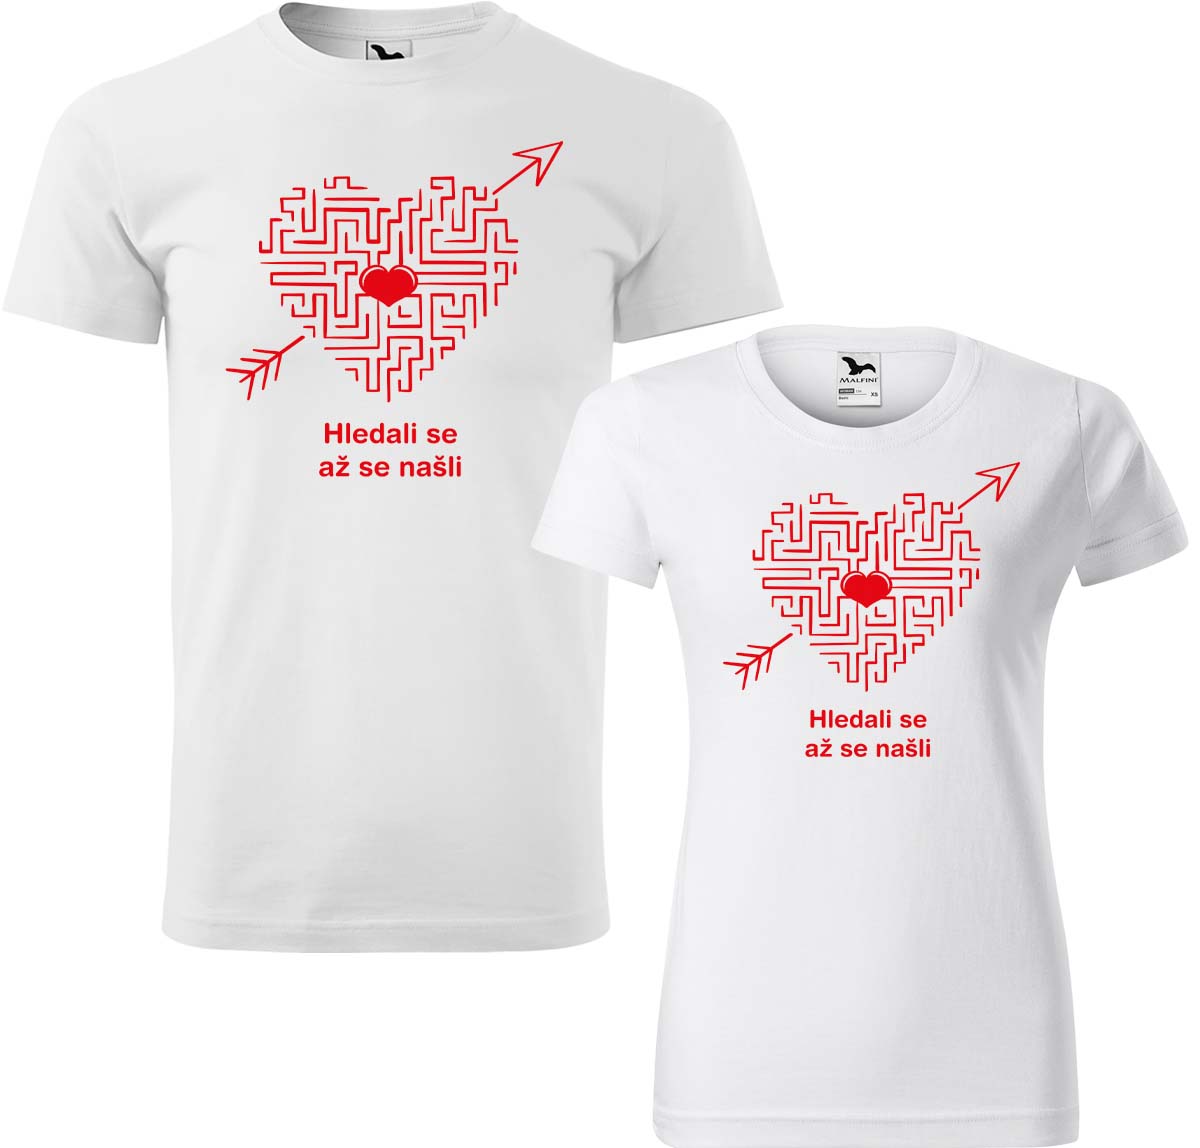 Trička pro páry - Hledali se, až se našli (srdce) Barva: Bílá (00), Velikost dámské tričko: L, Velikost pánské tričko: XL